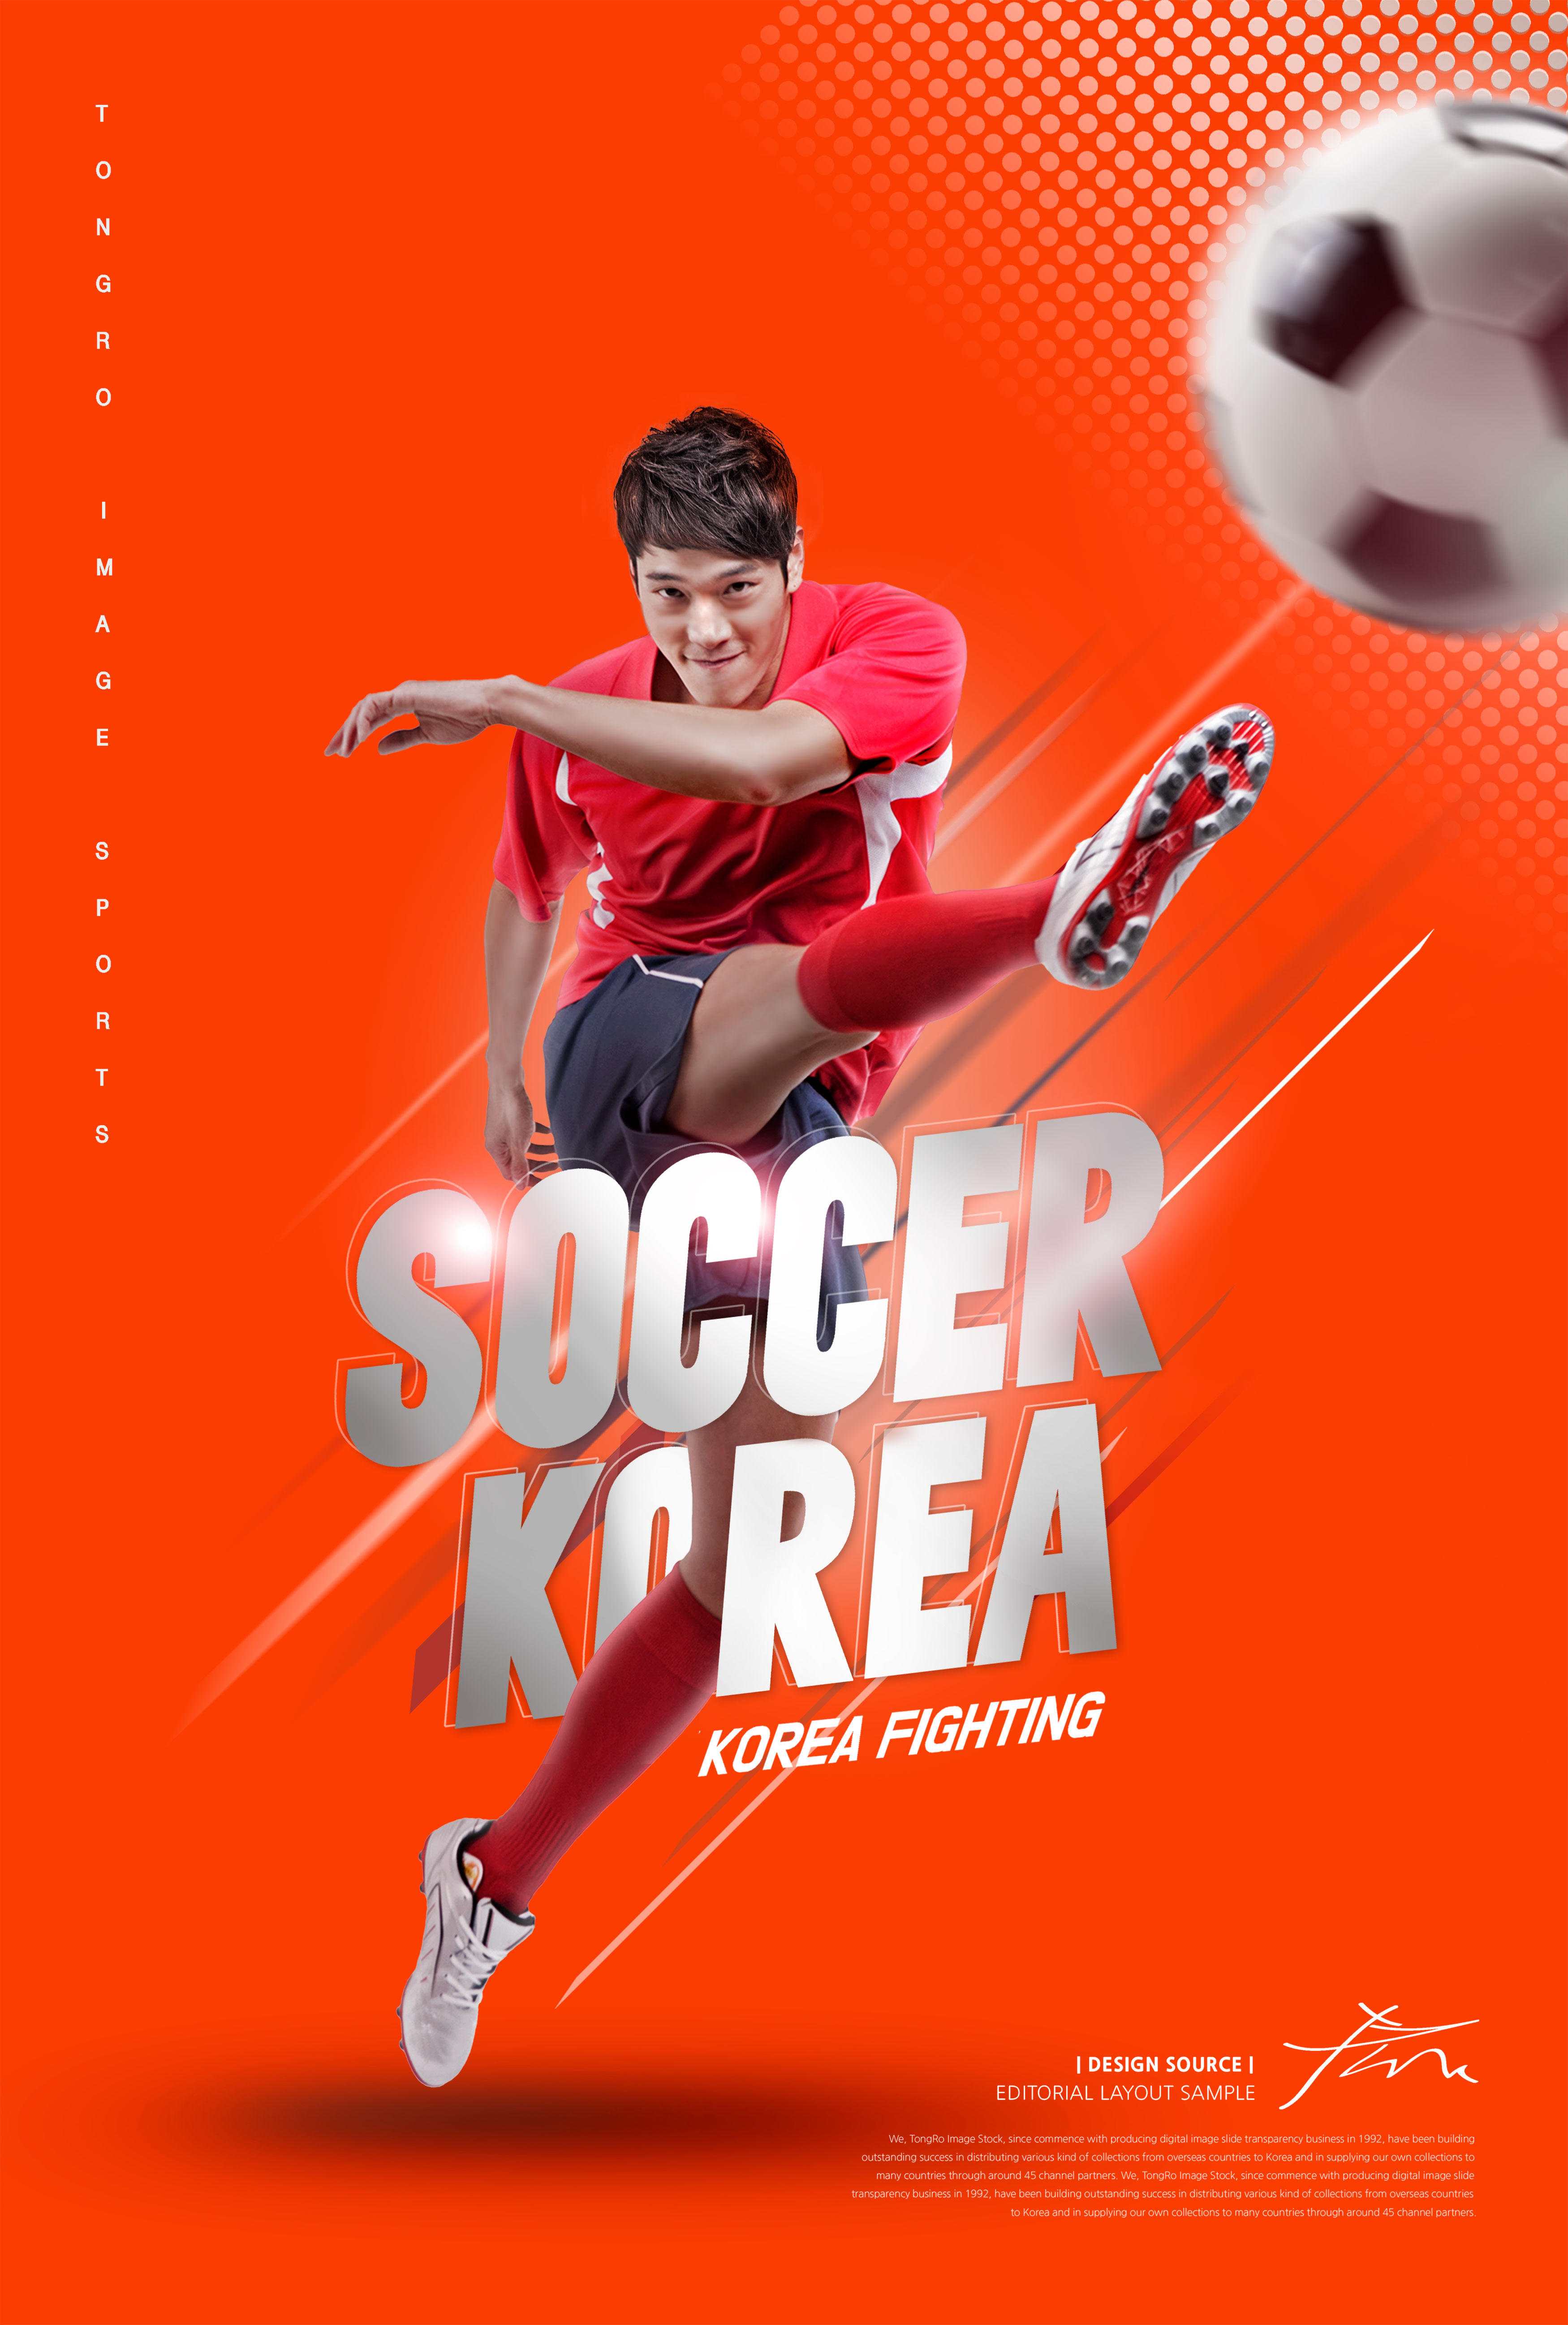 足球体育运动比赛海报PSD素材素材库精选psd模板插图